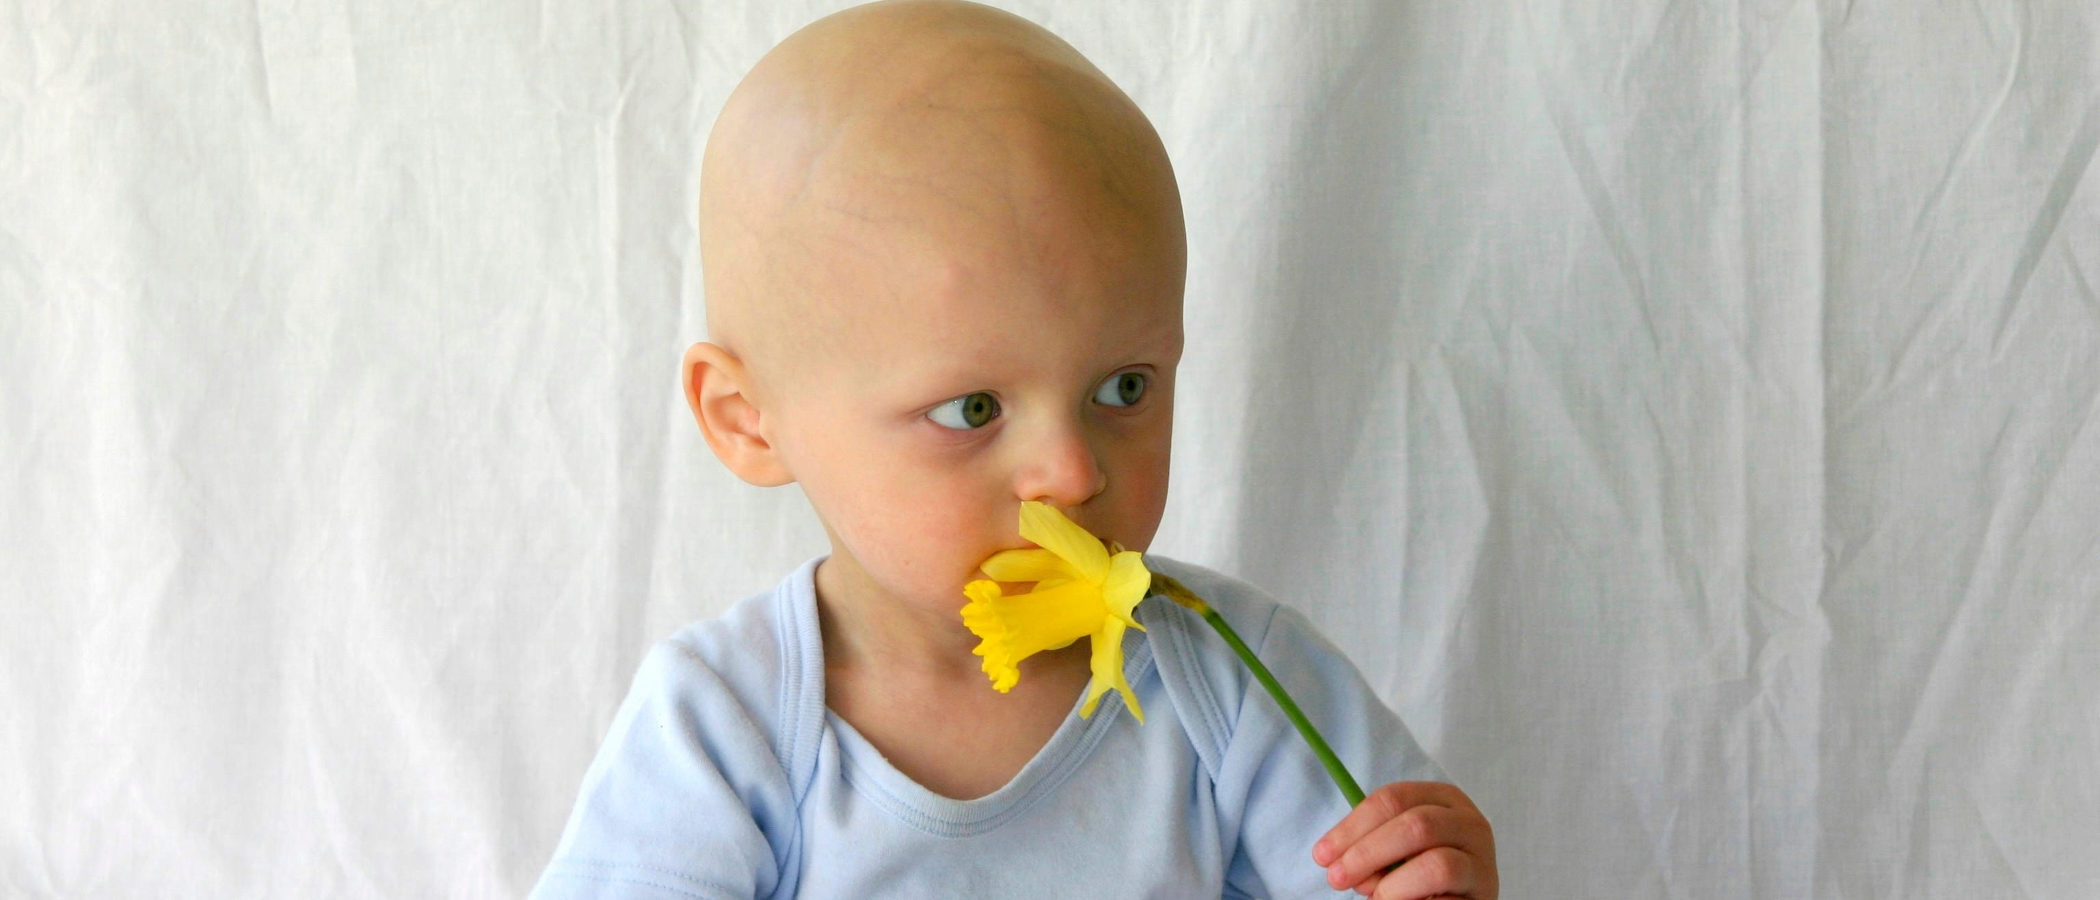 Mitos y verdades sobre el cáncer infantil